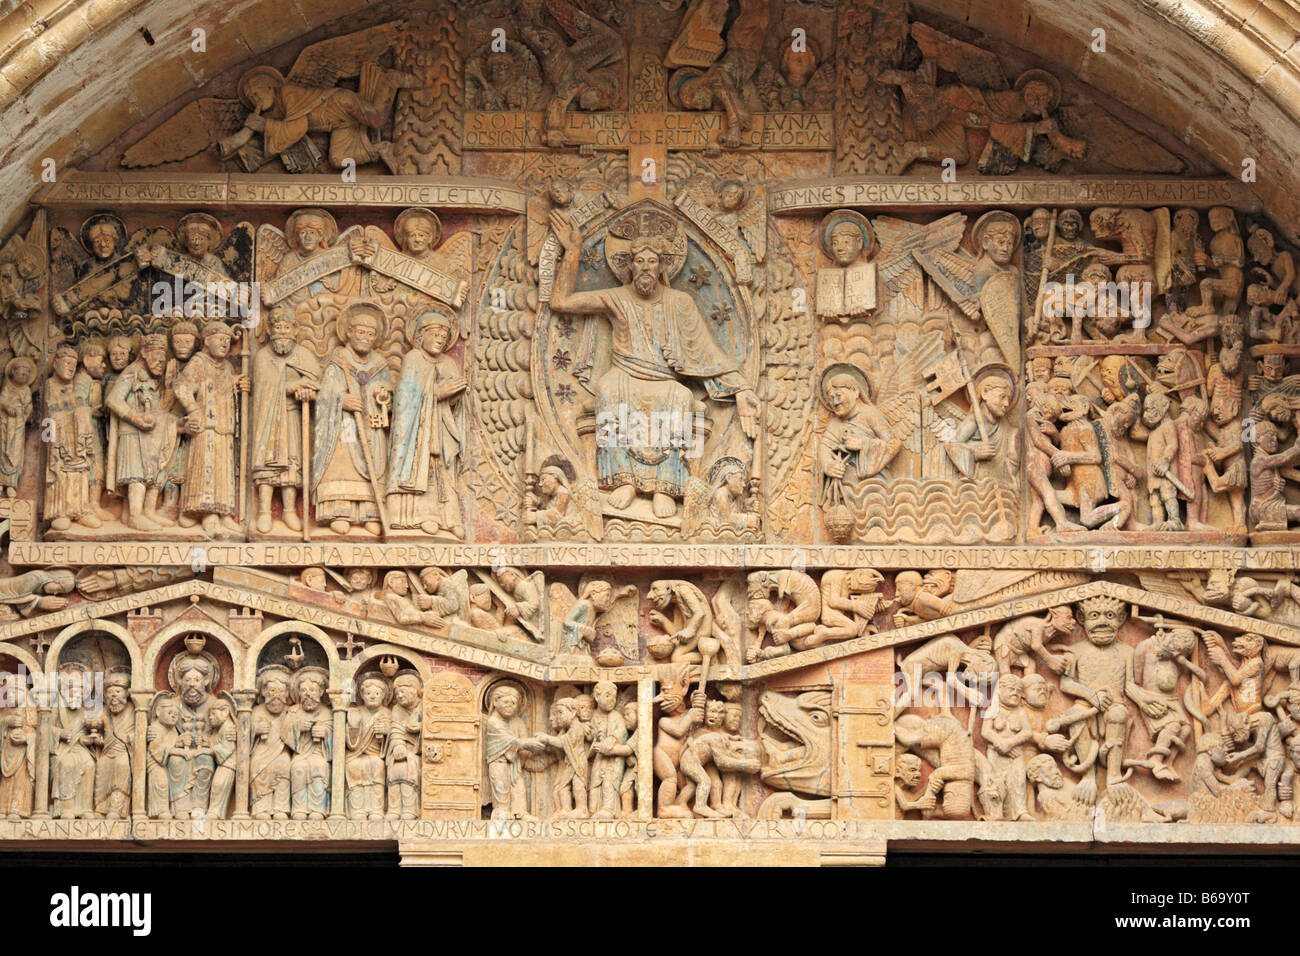 Sculpture romane en pierre, bas-relief sculpté sur le portail de l'église abbatiale Sainte Foy (1124), Conques, France Banque D'Images